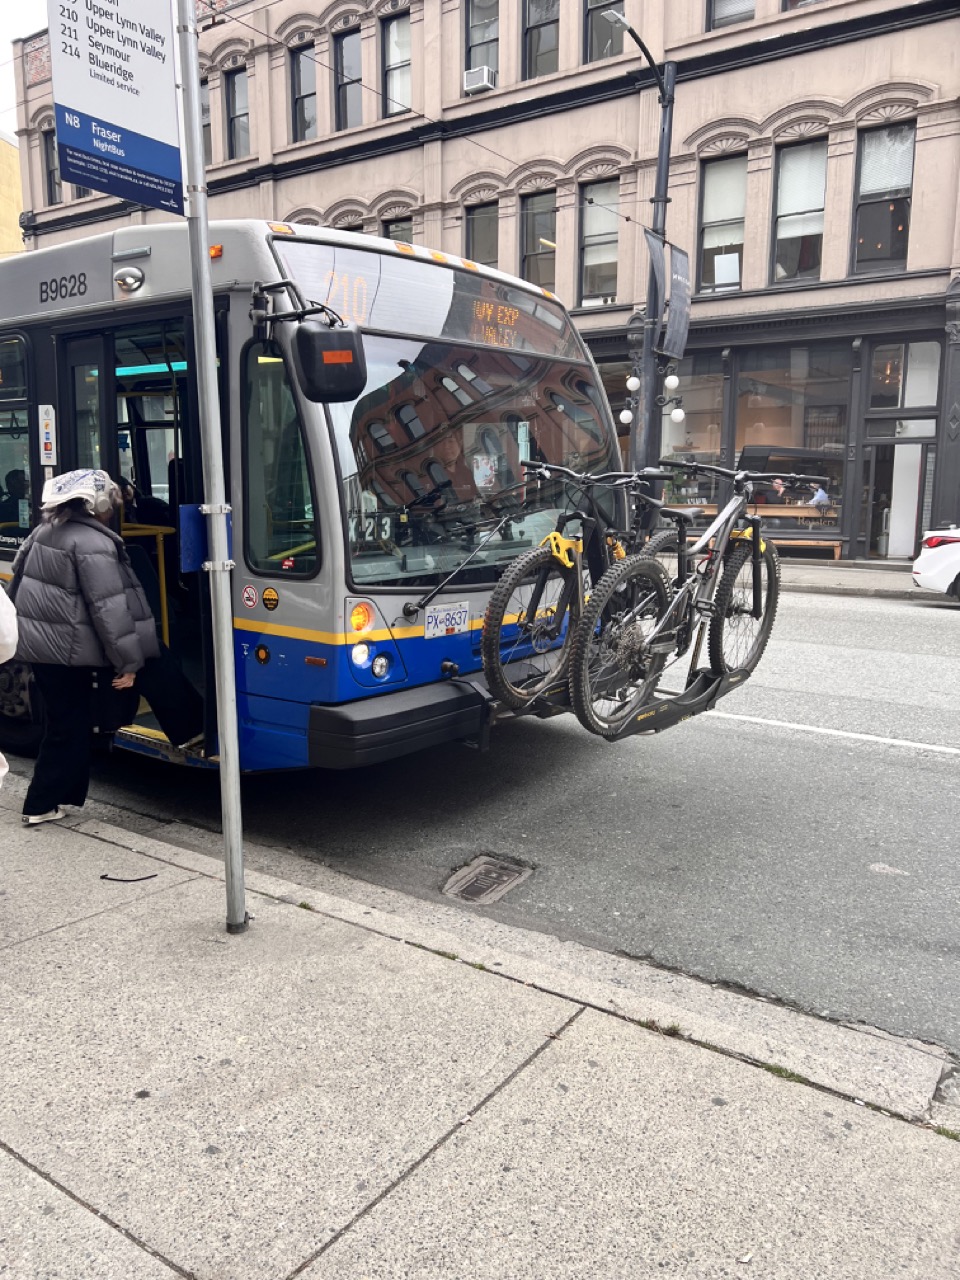 밴쿠버 버스는 신기하게 앞에 자전거를 실을 수 있다. 너무 좋은데 이건?